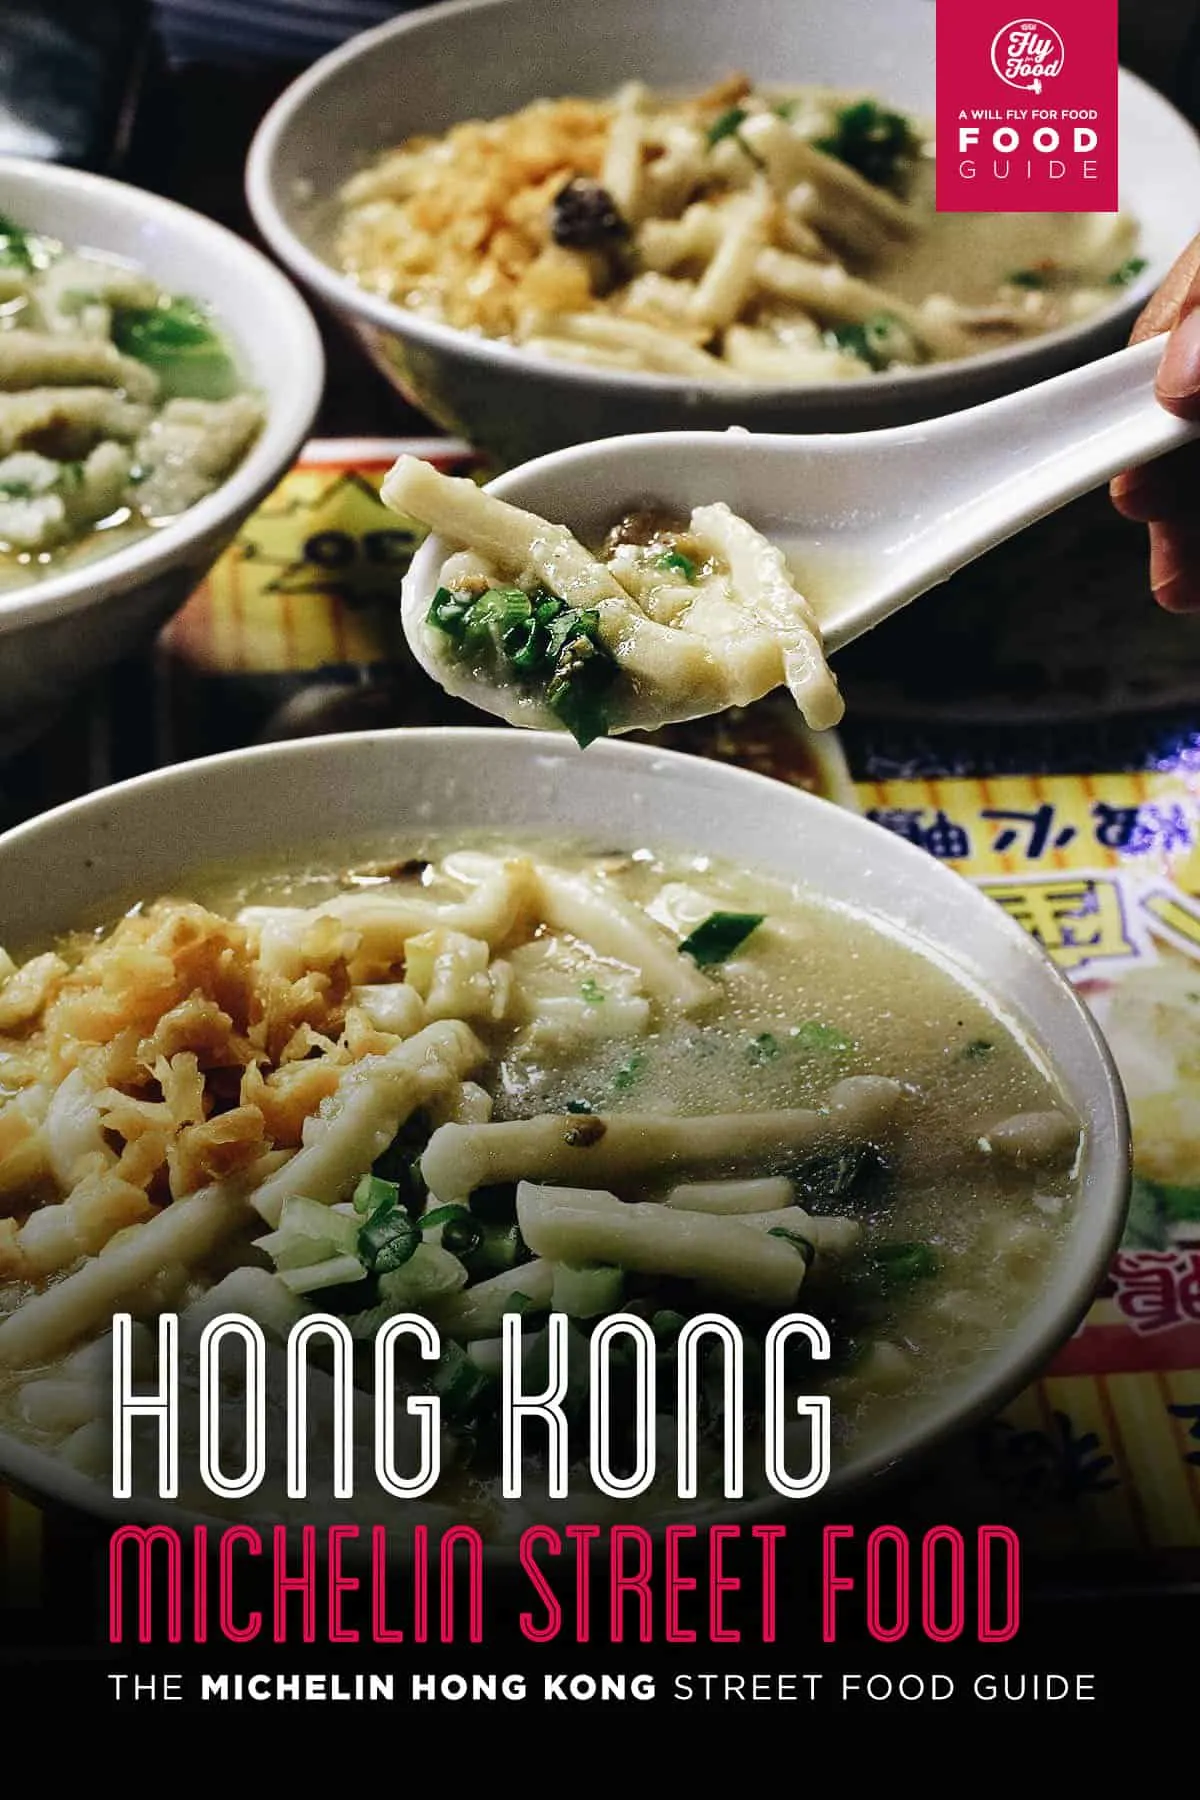 Bowl of noodles, Hong Kong